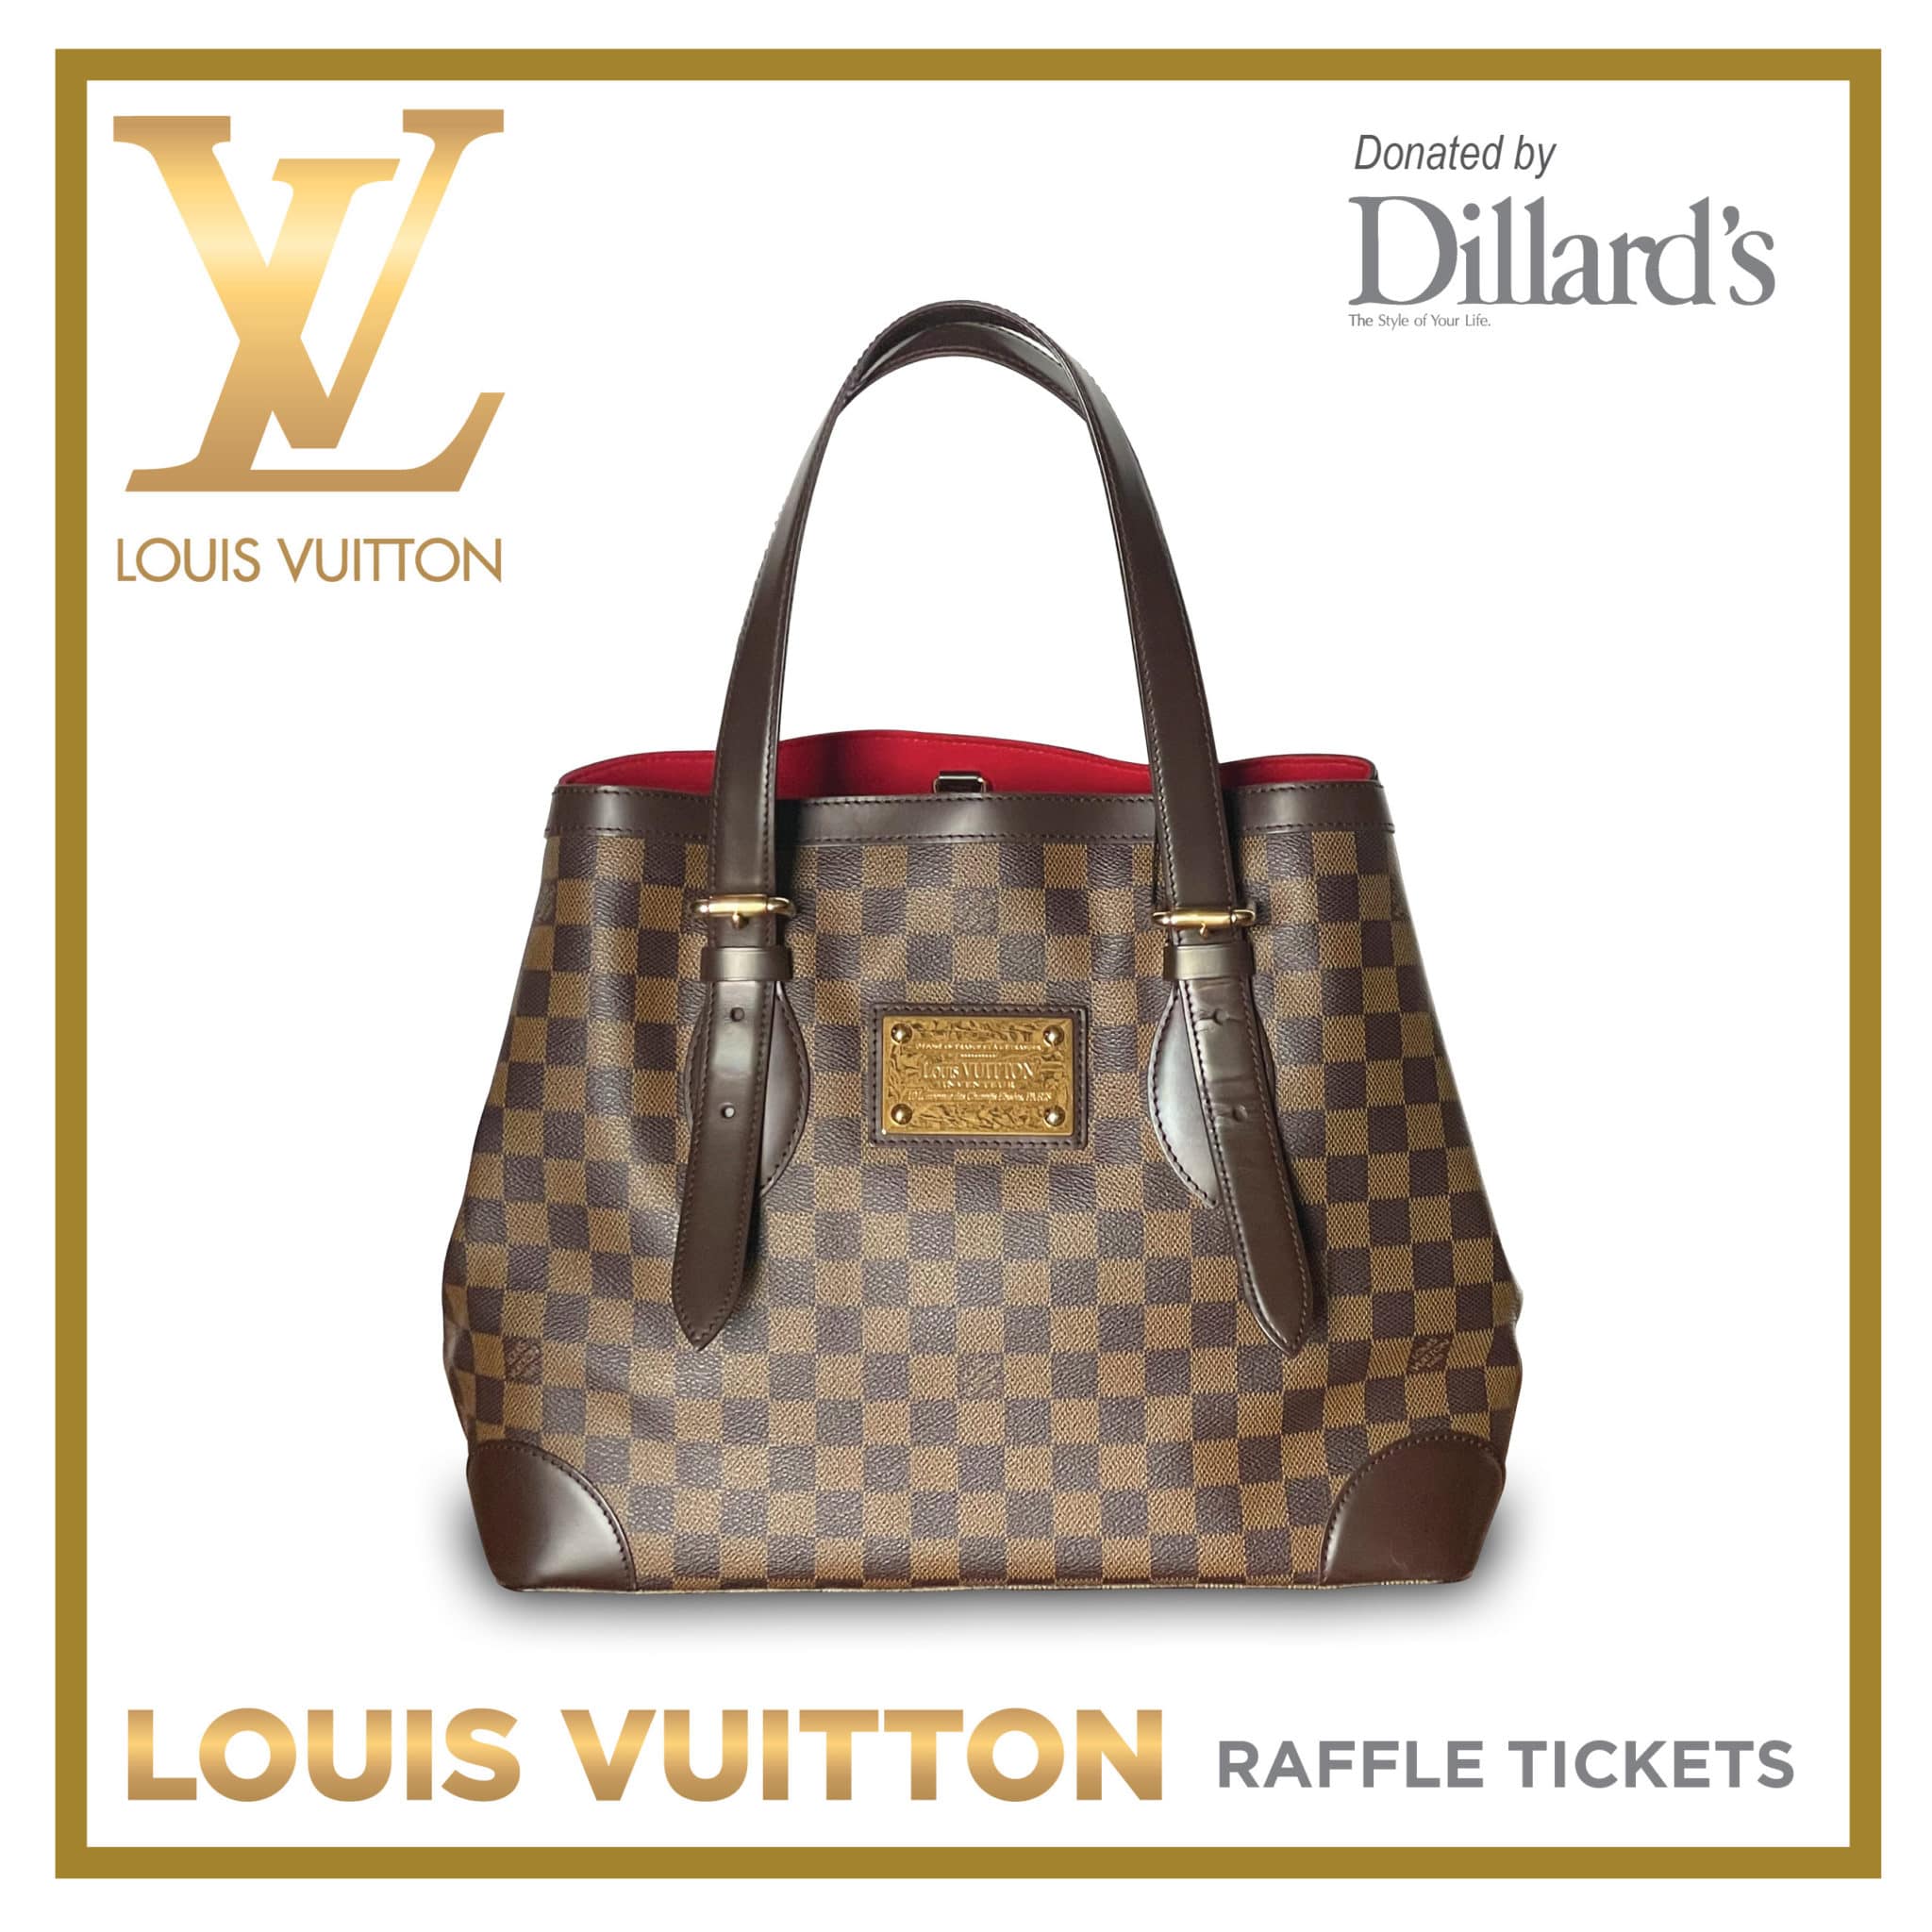 Win a Louis Vuitton bag!